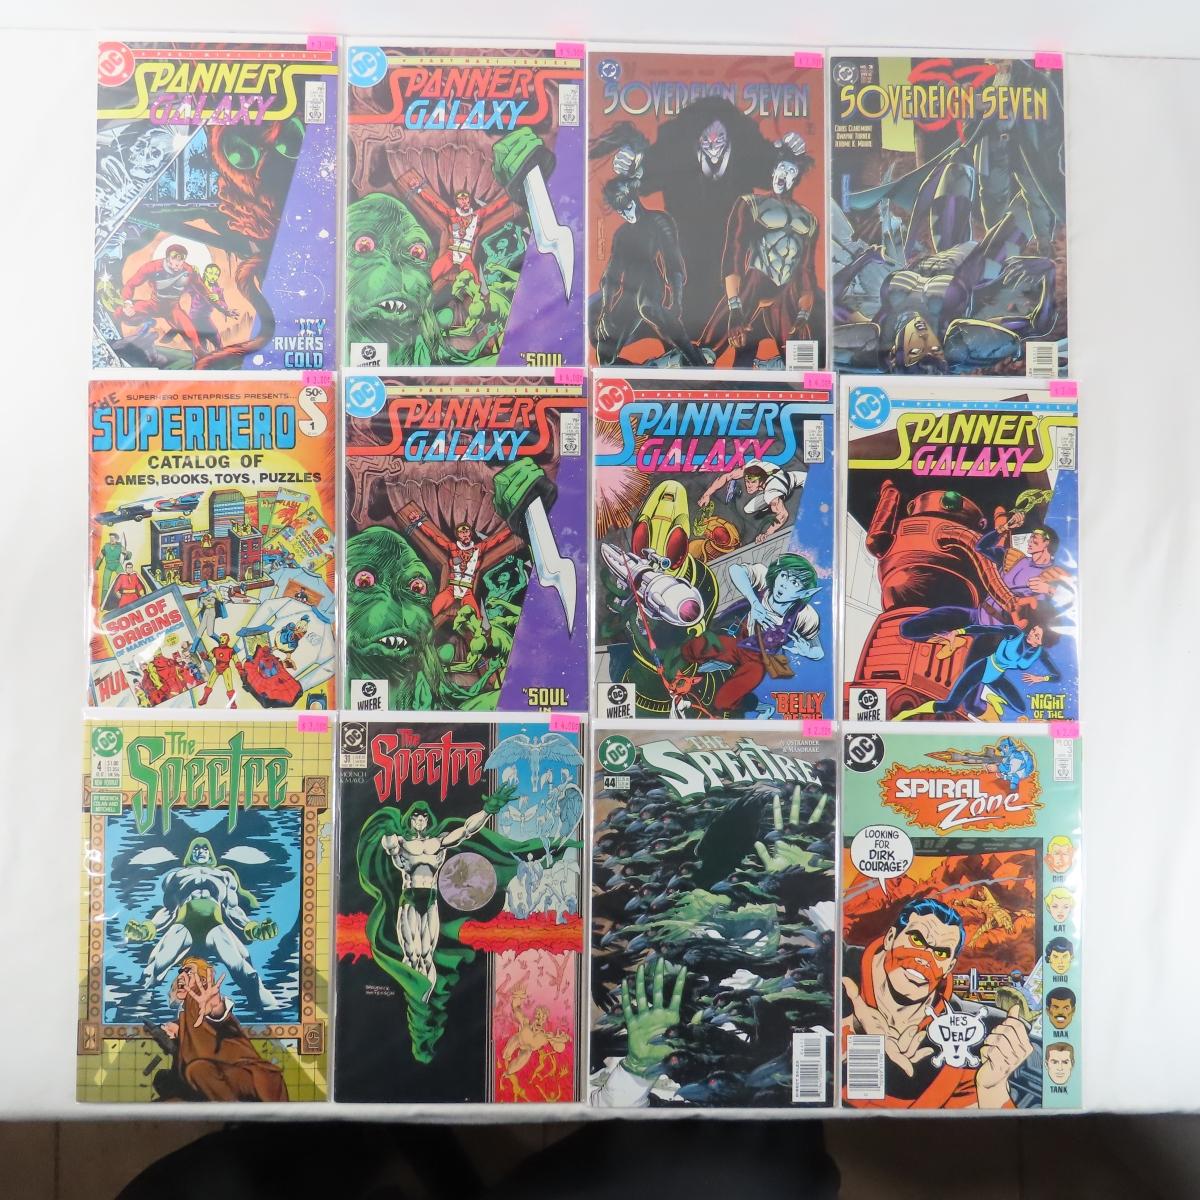 89 DC Comics Sun Devils, Scooby Doo, Starman